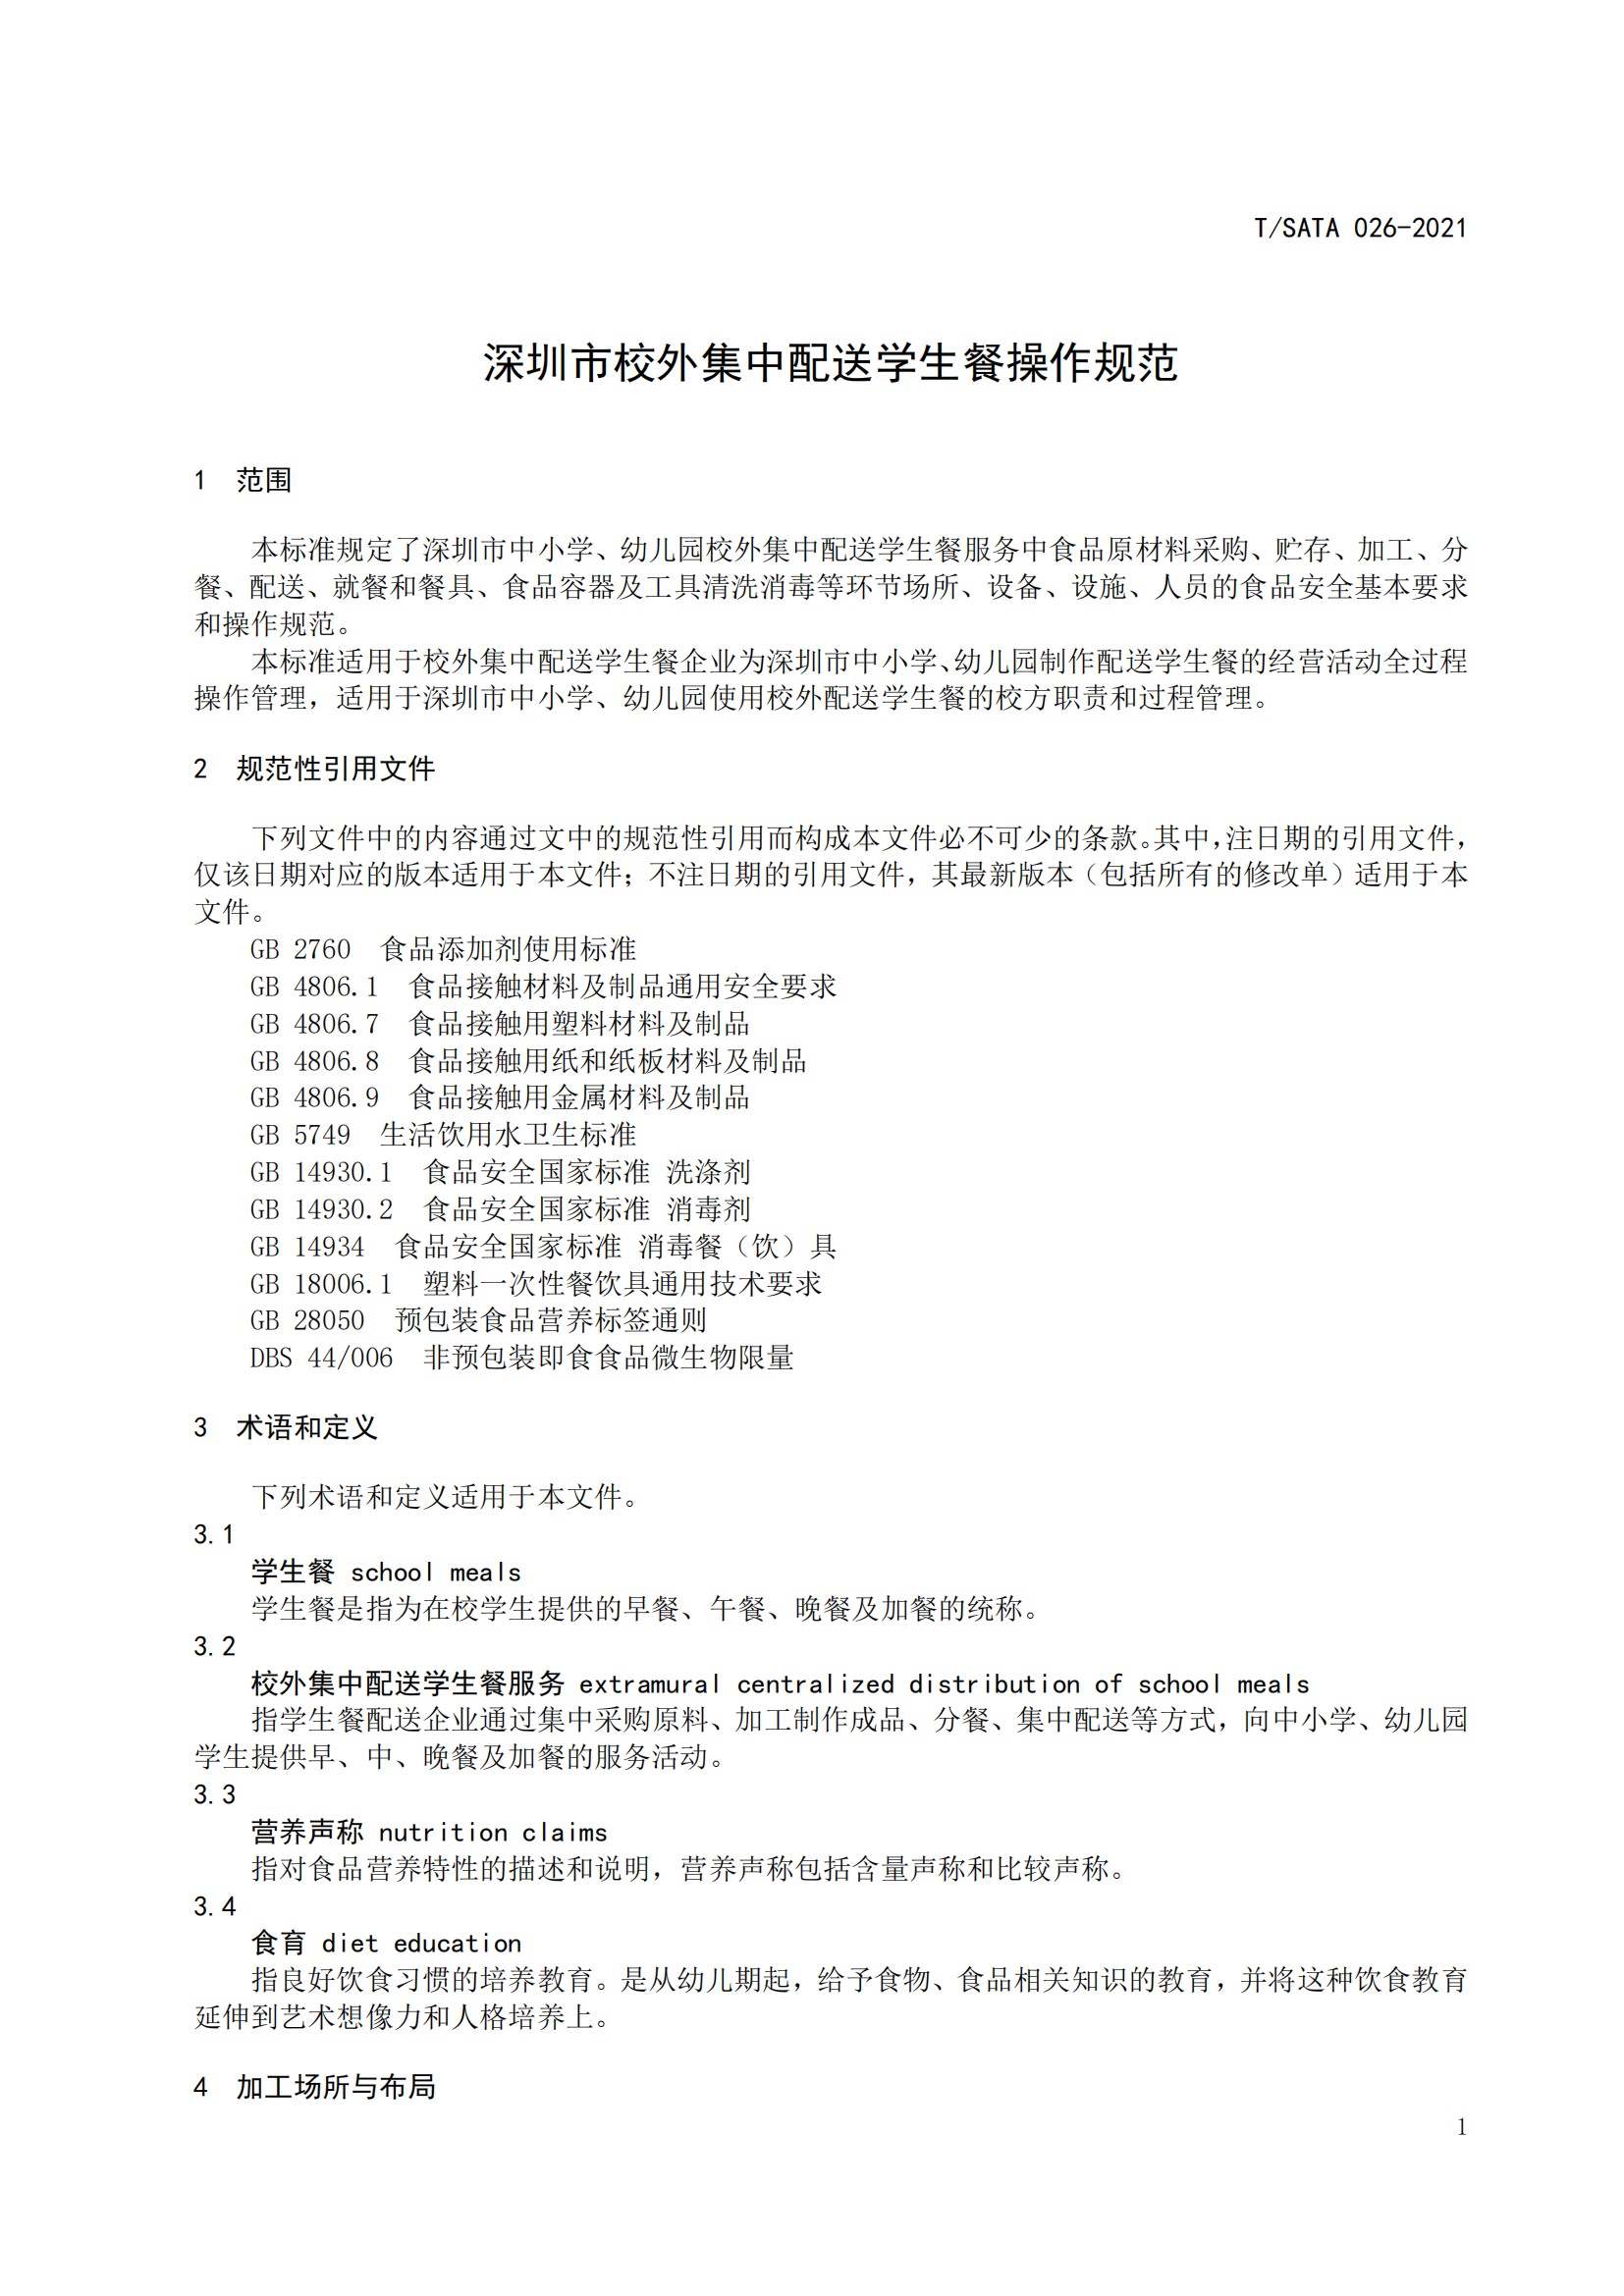 《深圳市校外集中配送学生餐操作规范》团体标准（发布版）2021.11.18终_03.png